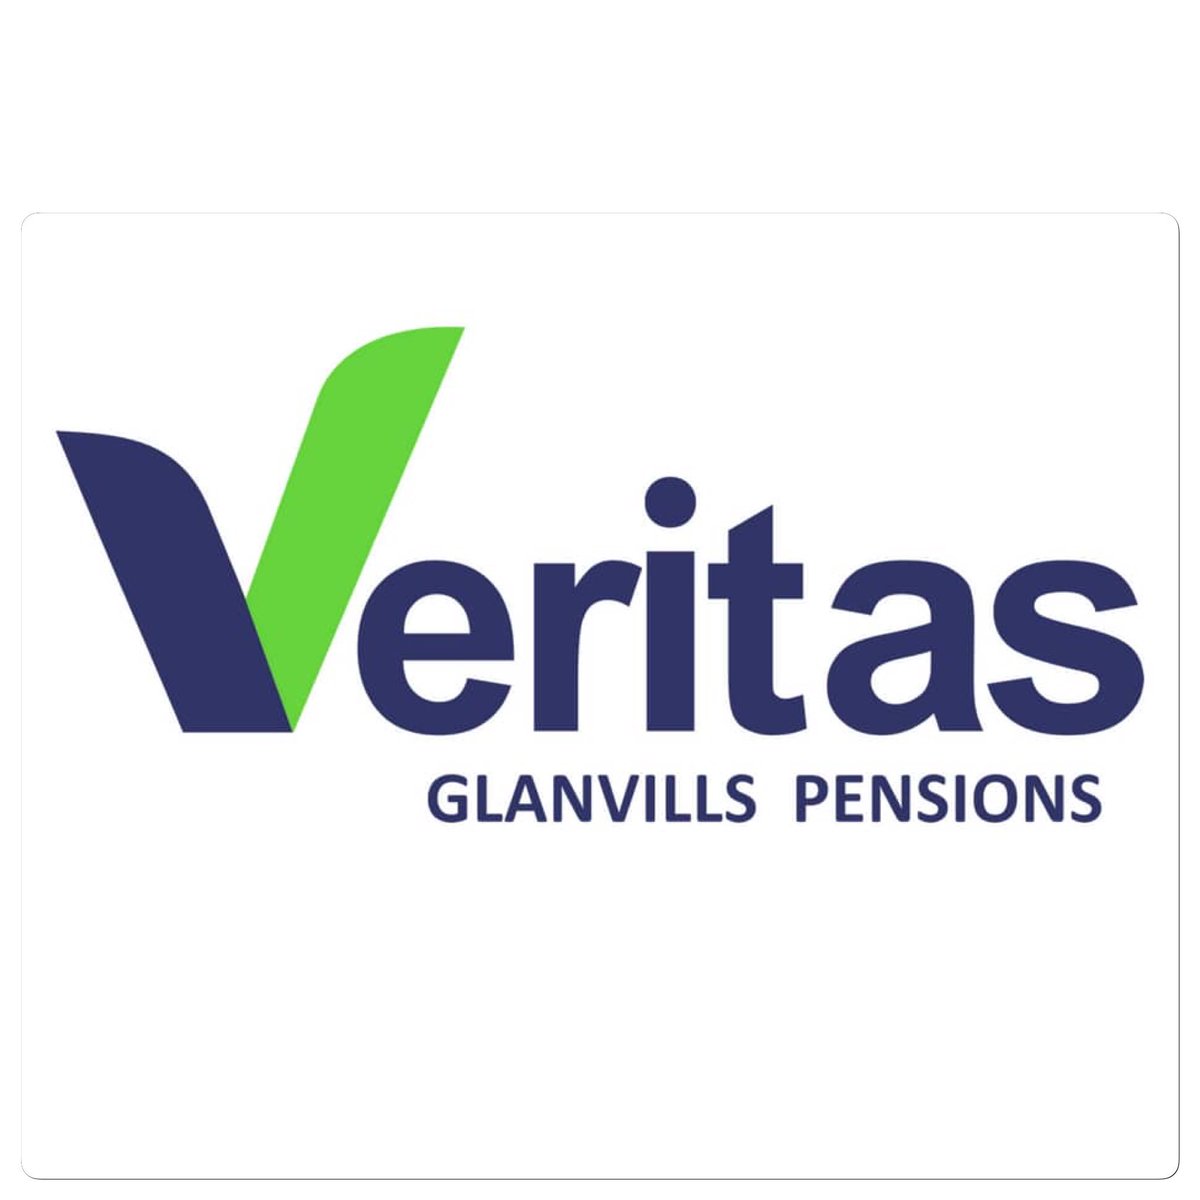 Veritas Glanvills Pensions